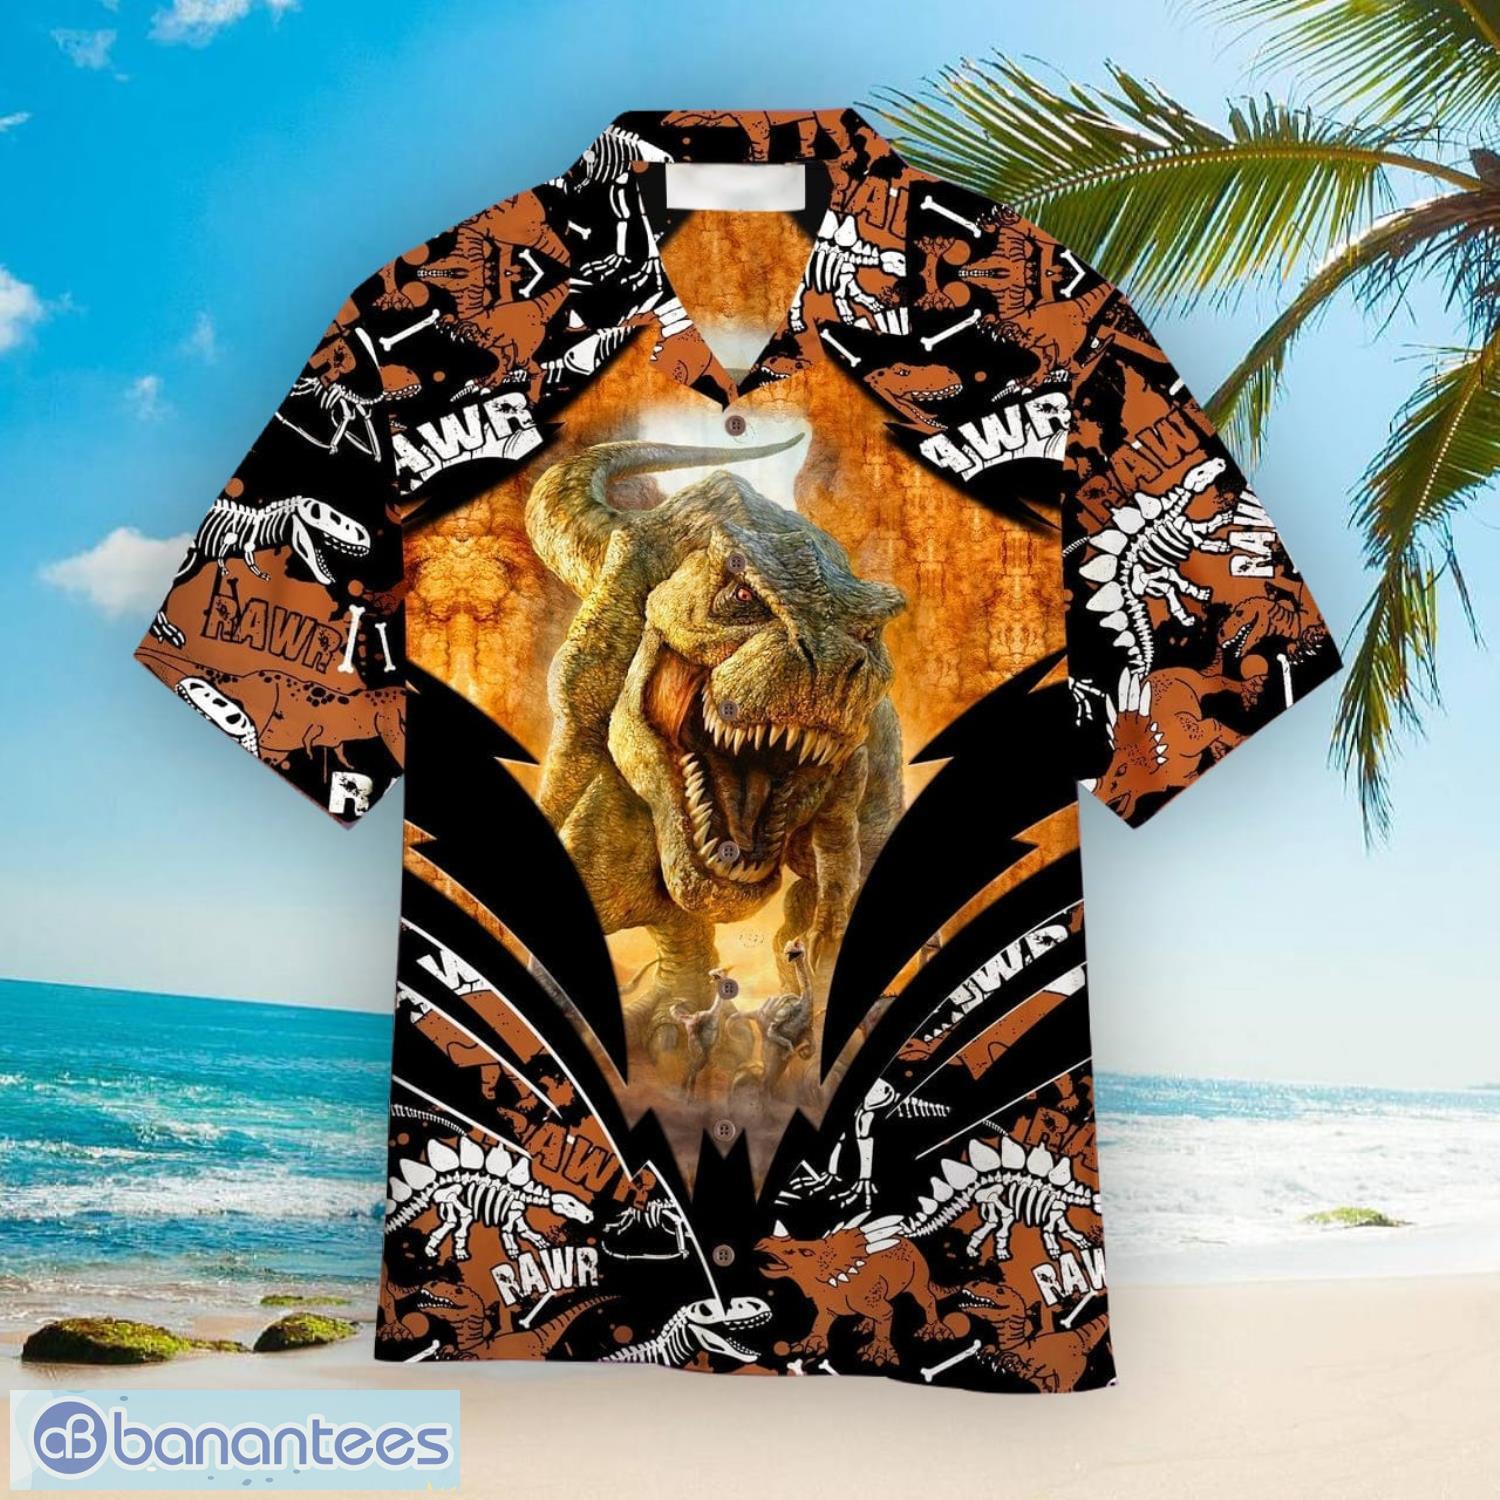 Dinosaurs Aloha Hawaiian Shirt For Men And Women - Dinosaurs Aloha Hawaiian Shirts For Men And Women  WT5639